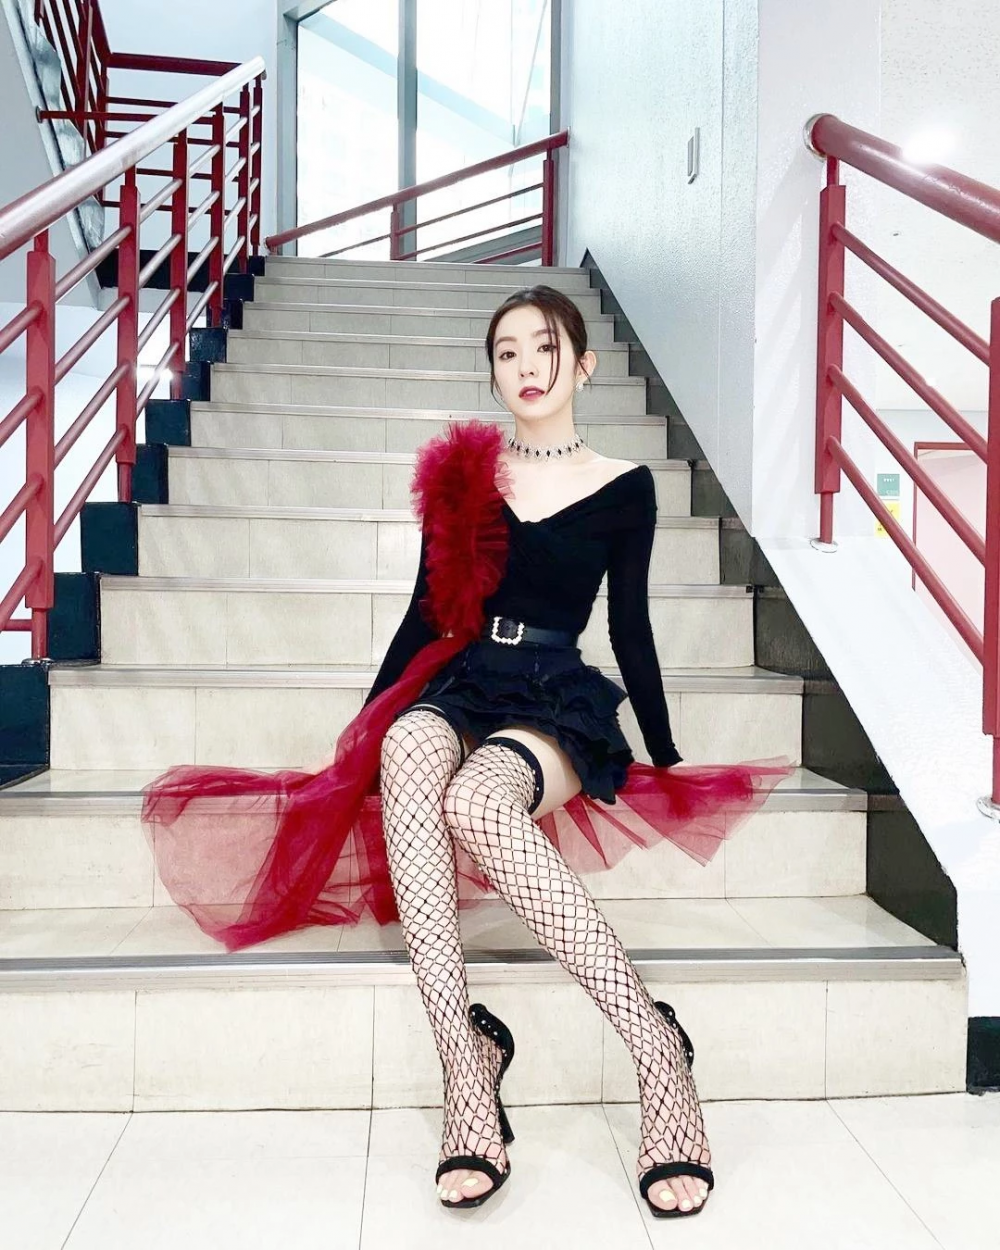 Red Velvet's Irene latest Instagram Posts